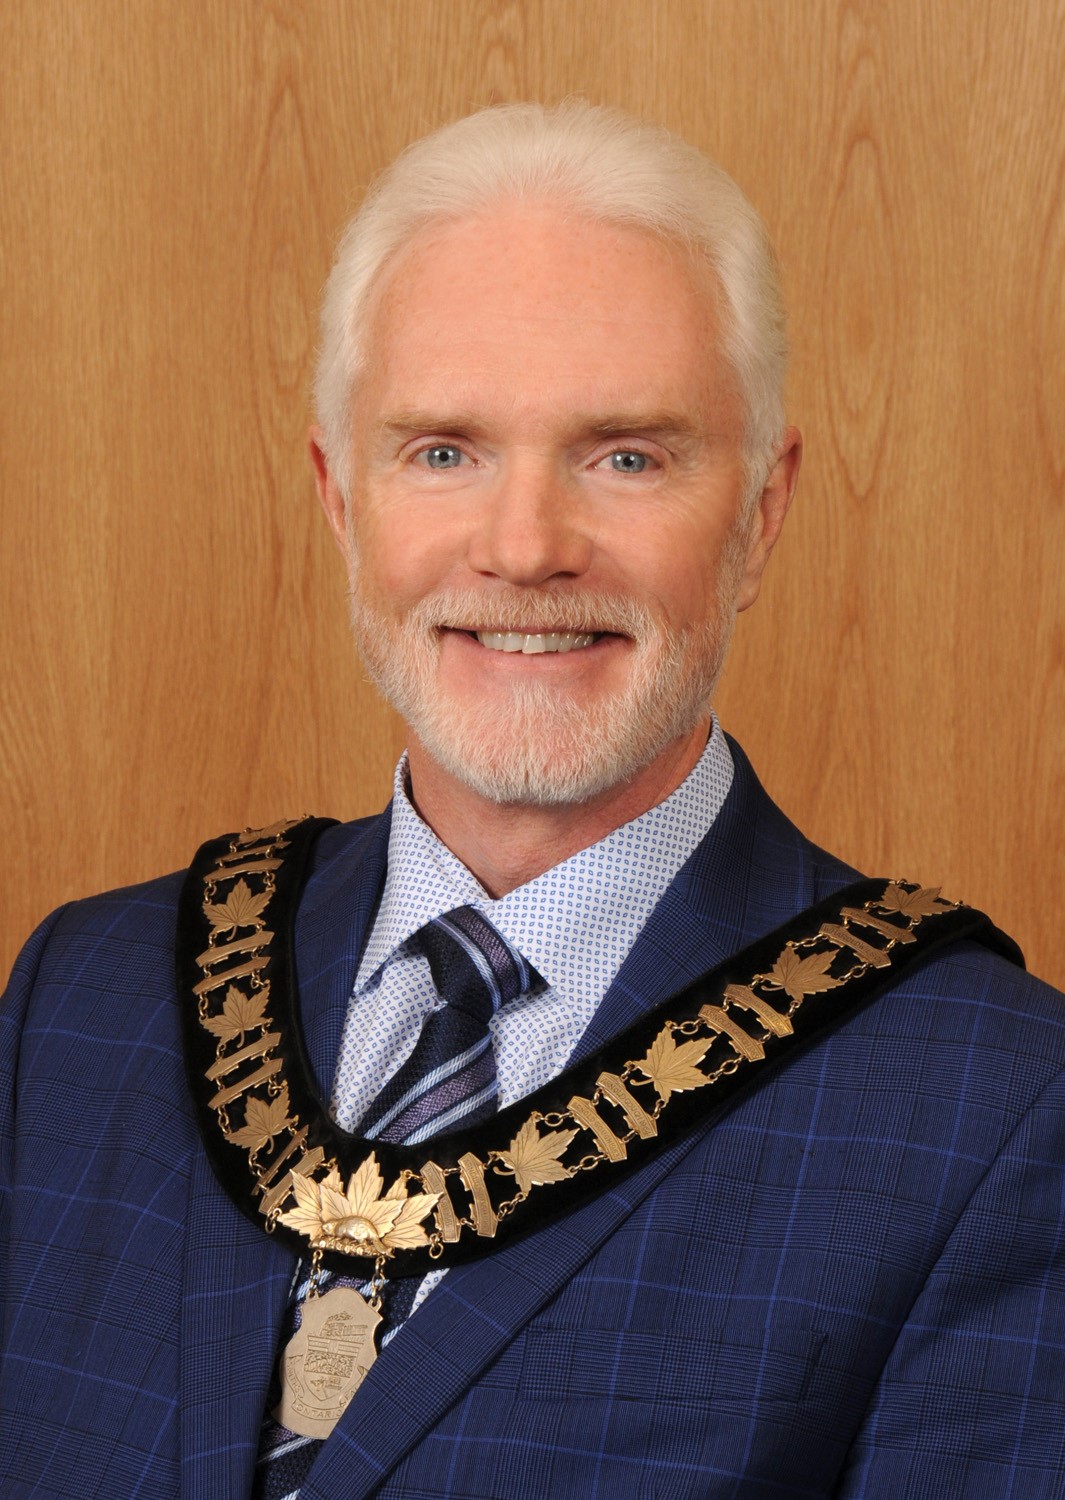 Mayor Shawn Pankow